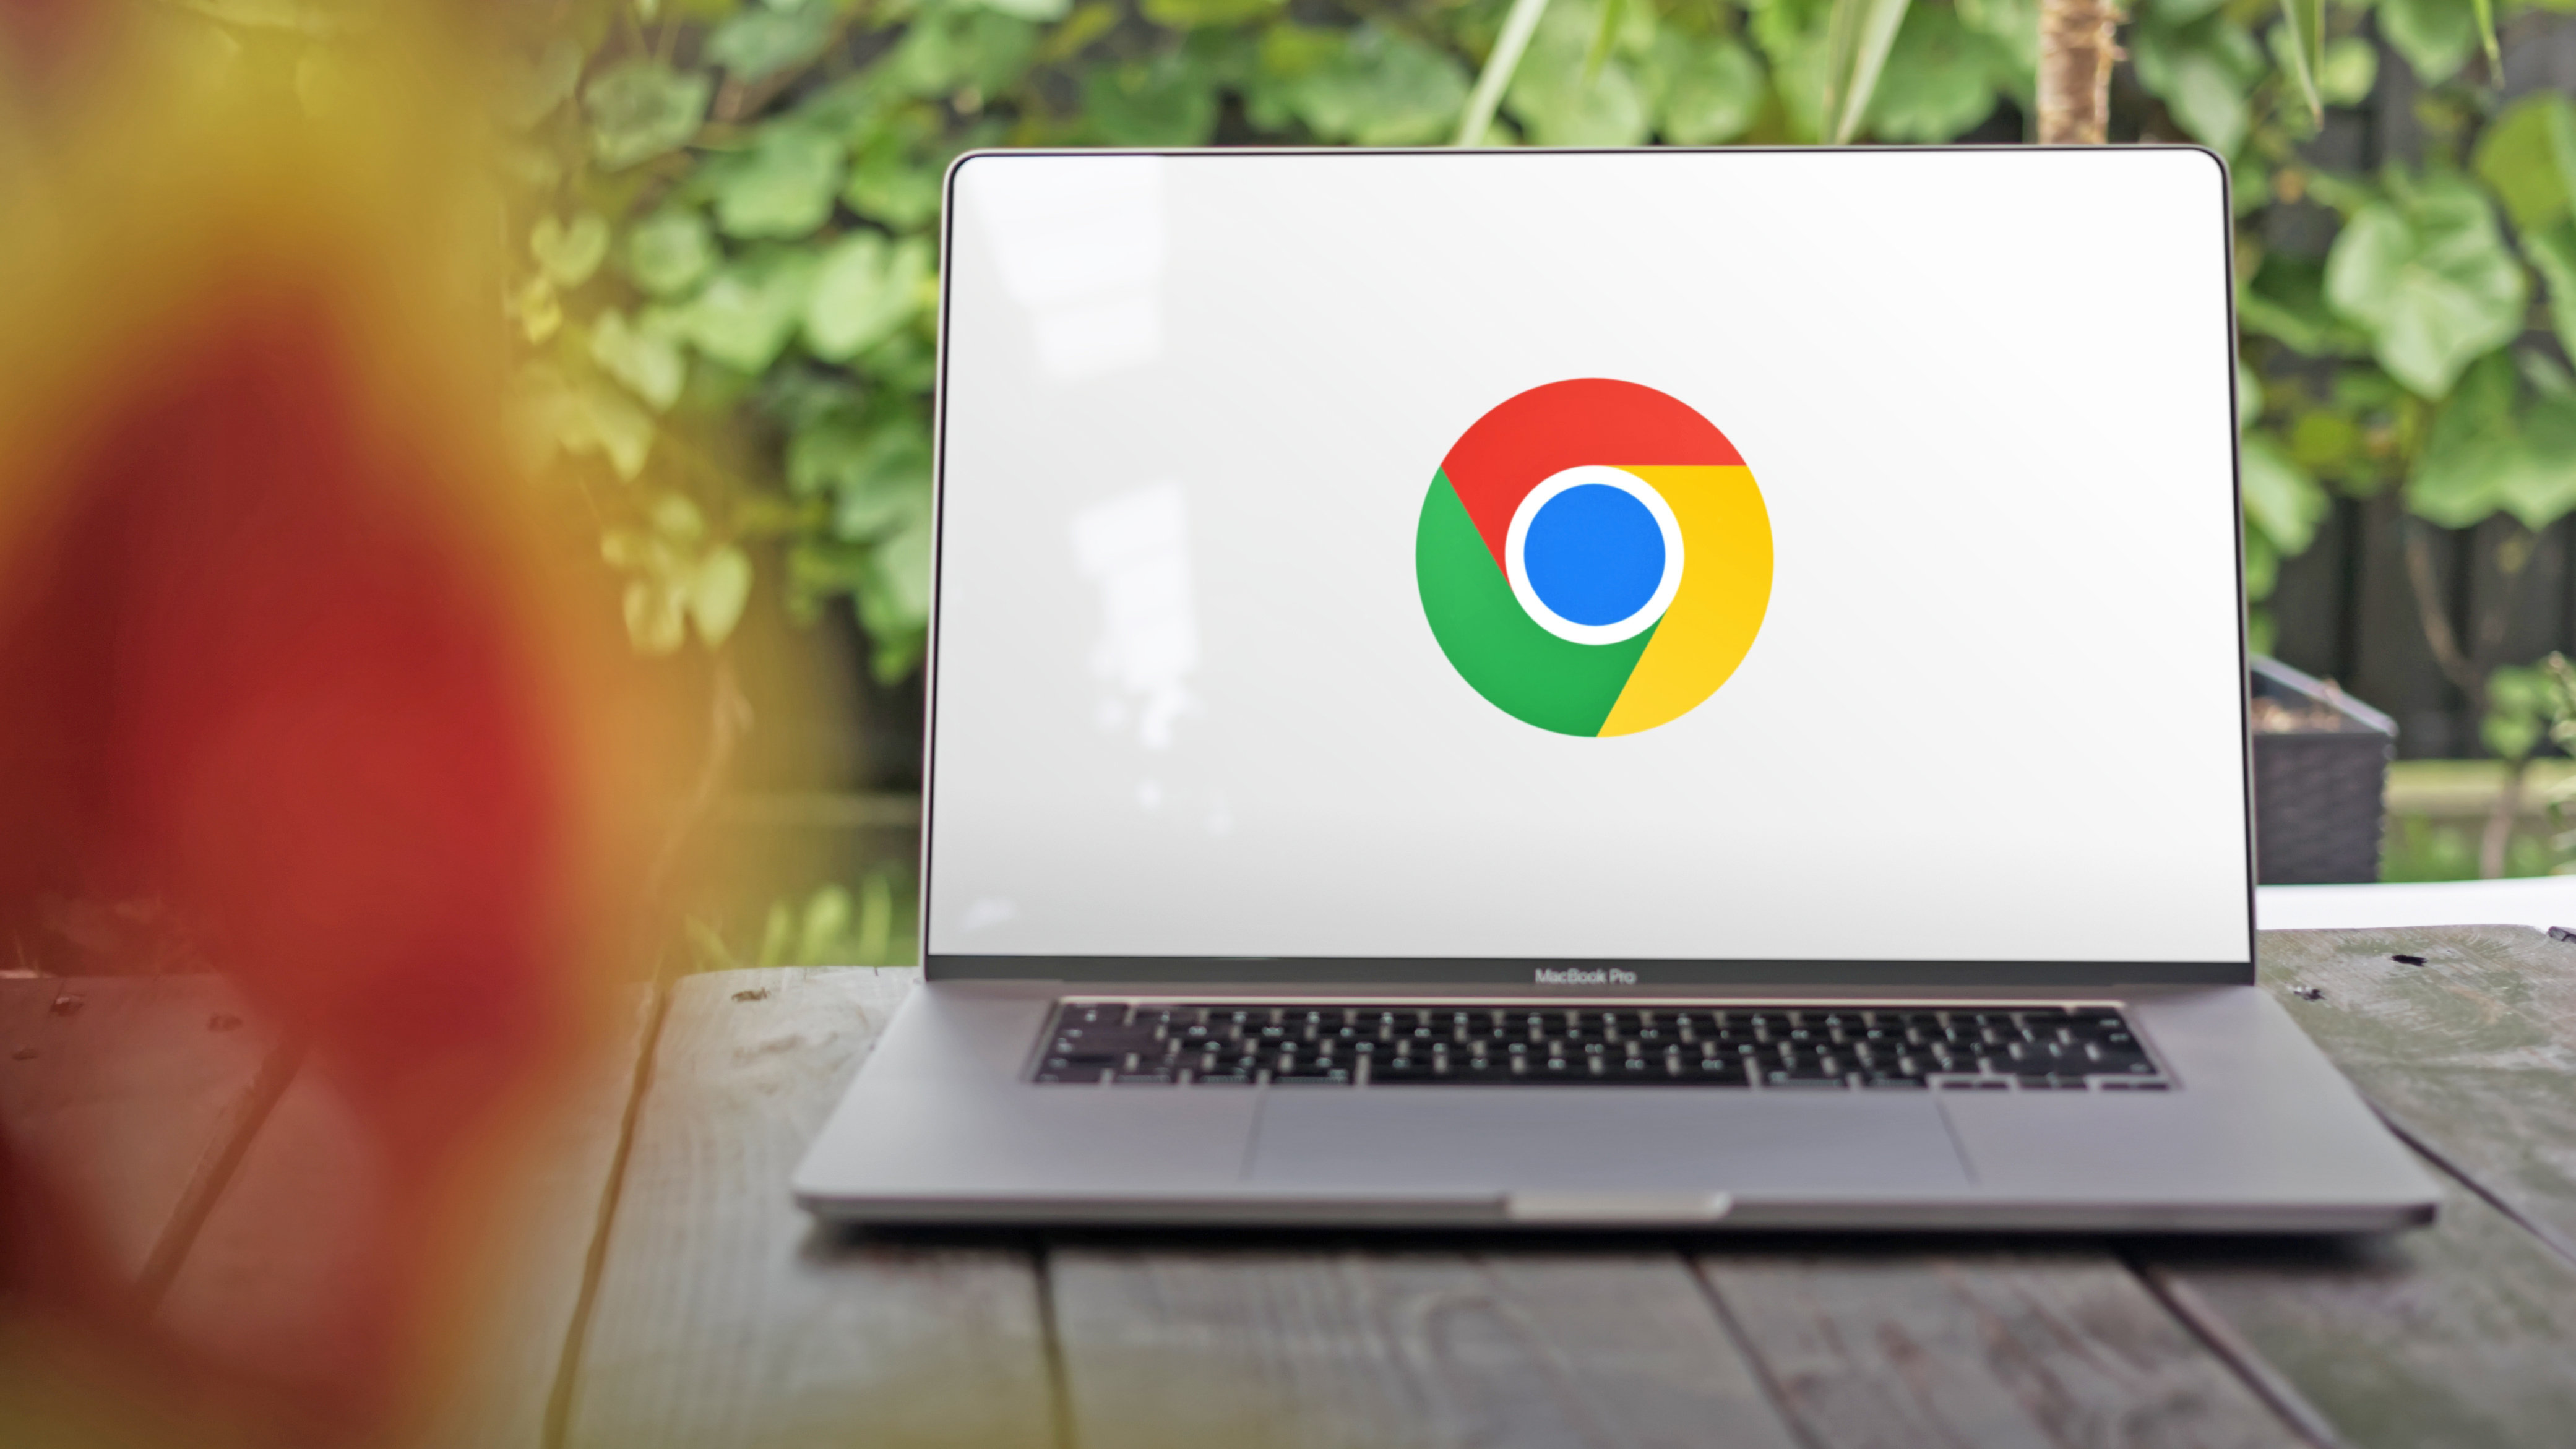 Arkasında yeşil yapraklar bulunan bir masanın üzerinde duran büyük bir MacBook Pro'nun ekranında, beyaz bir arka plan üzerinde Google Chrome logosunun yer aldığı bir fotoğraf.